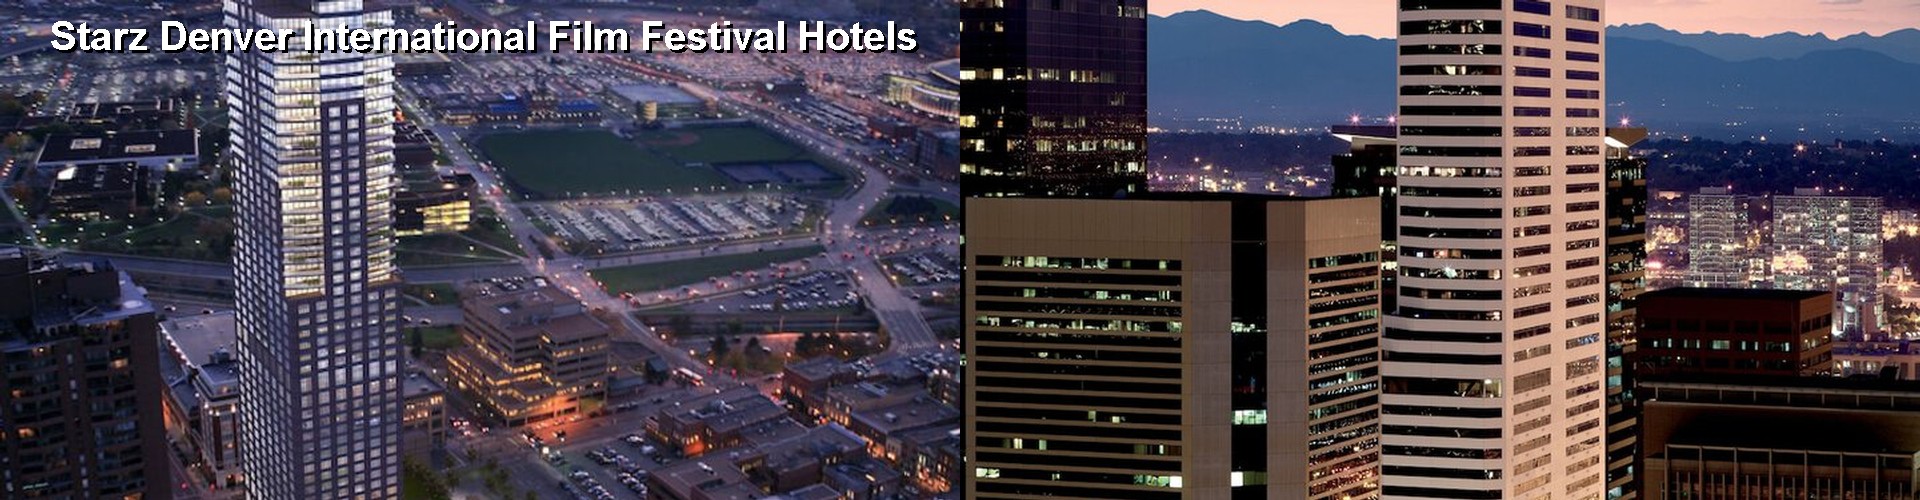 5 Best Hotels near Starz Denver International Film Festival